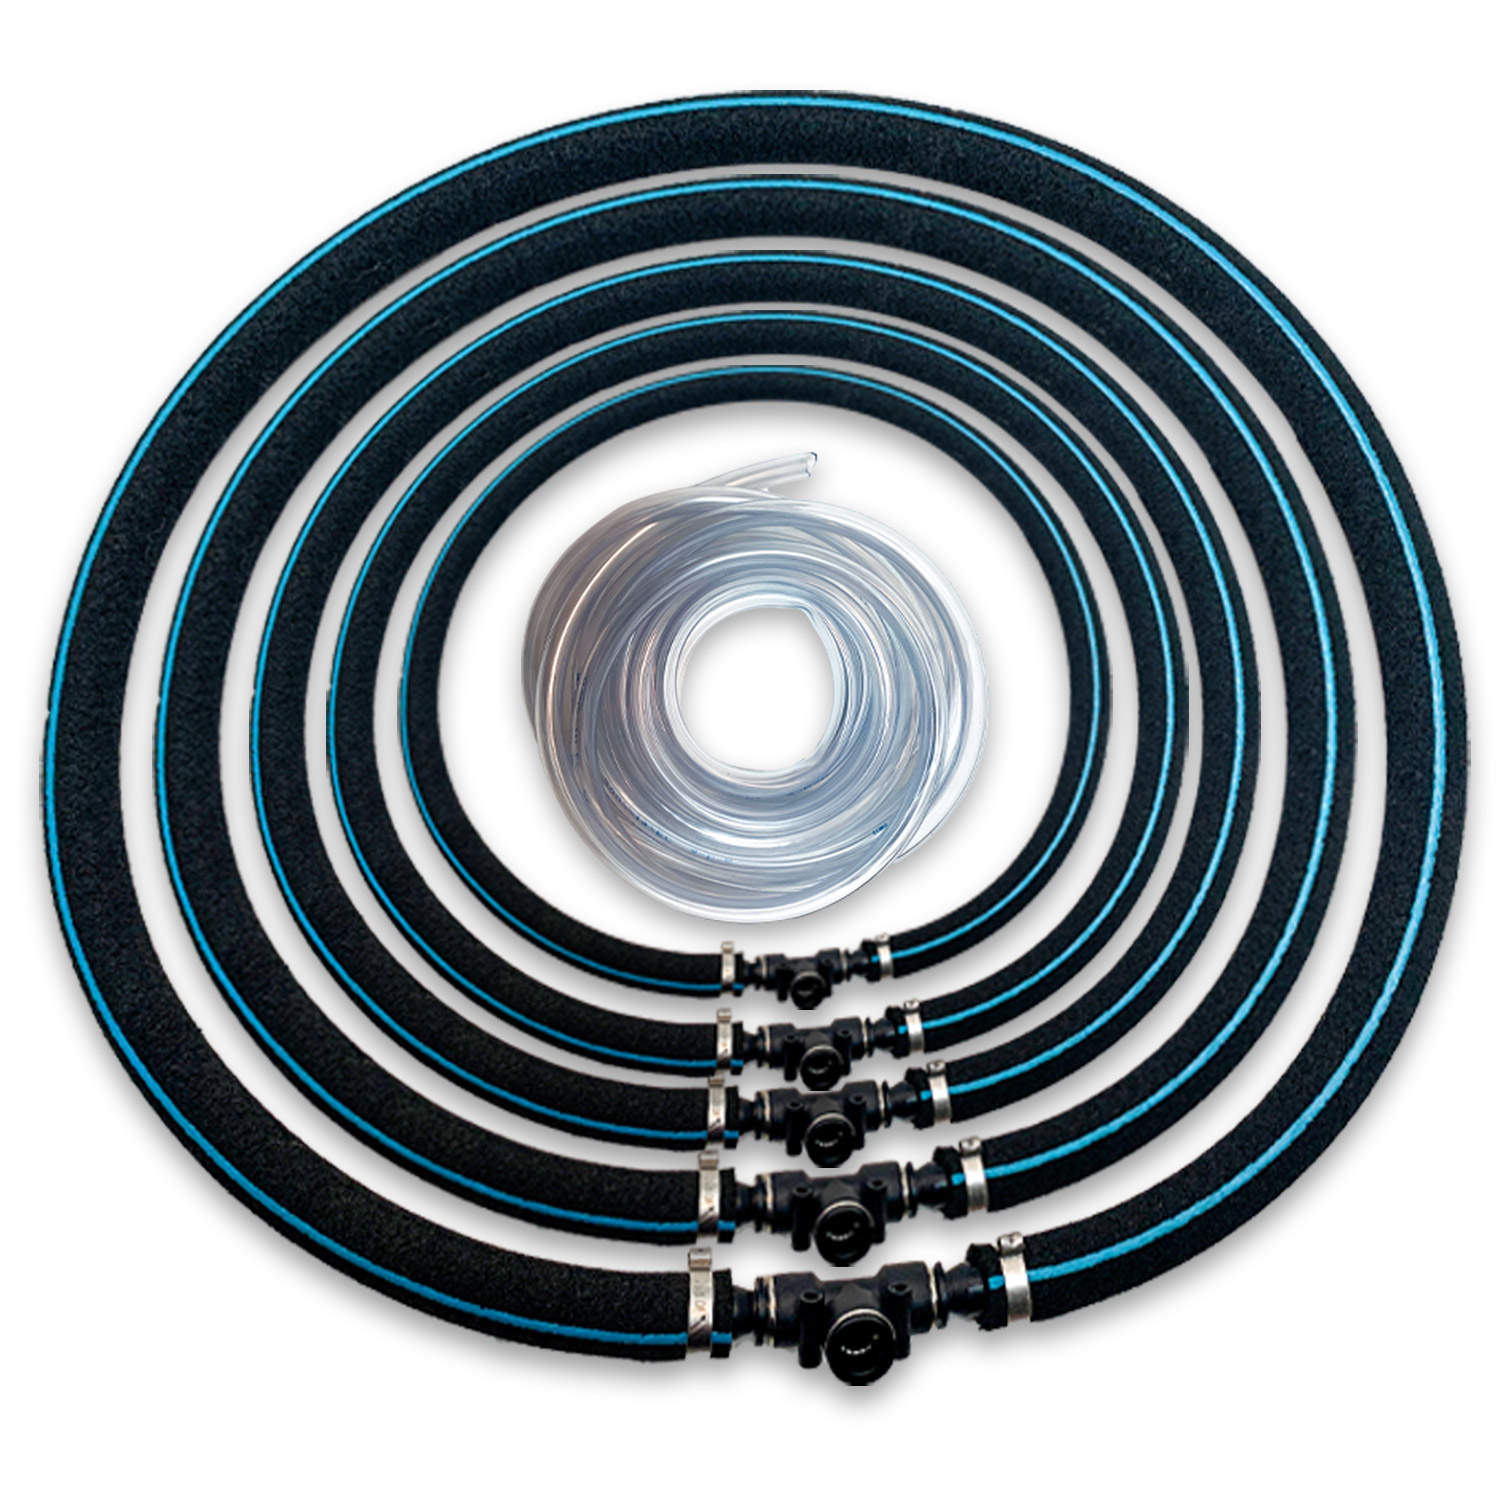 Belüfterstange 100 cm data-mtsrclang=en-US href=# onclick=return false; 							show original title Koi-Teich-Belüftung High-quality air Smart ventilation Ring- 							ring Koi Pond-Ventilation Details about   Japan-Vent Ring Belüftungsring 